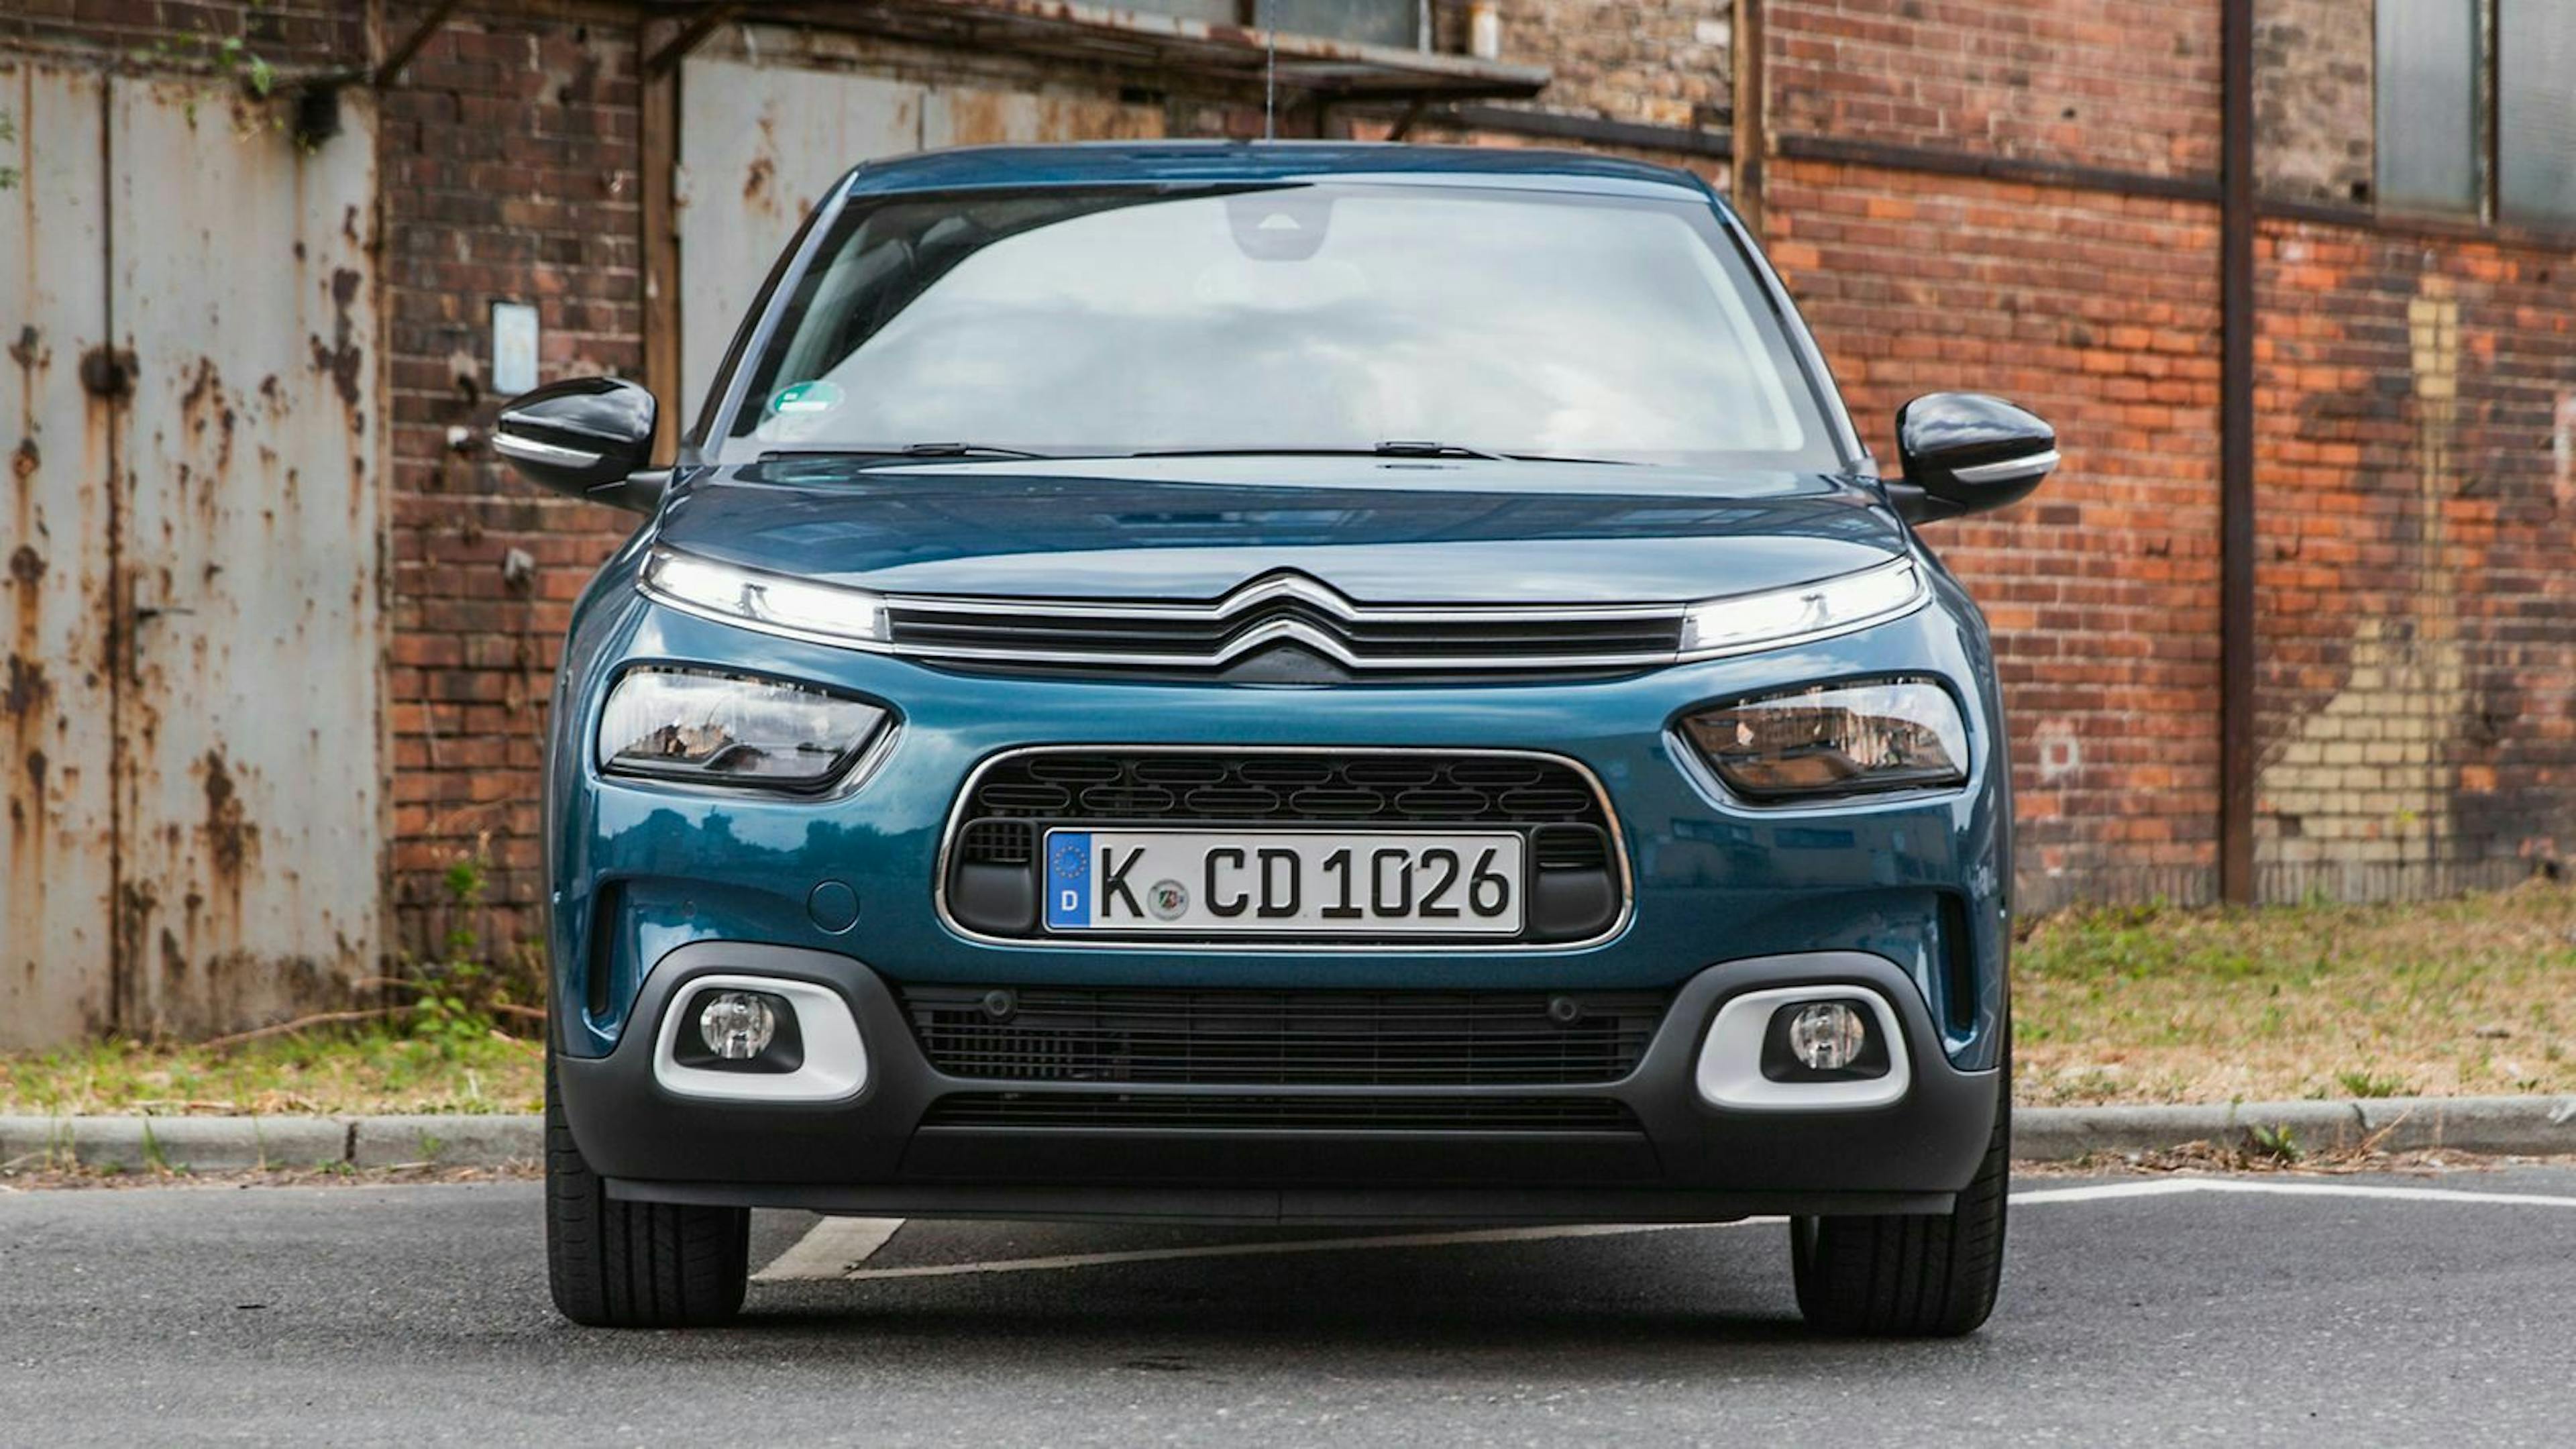 Für unseren Testwagen verlangt Citroën 25.130 Euro. Der Basispreis startet bei 17.890 Euro